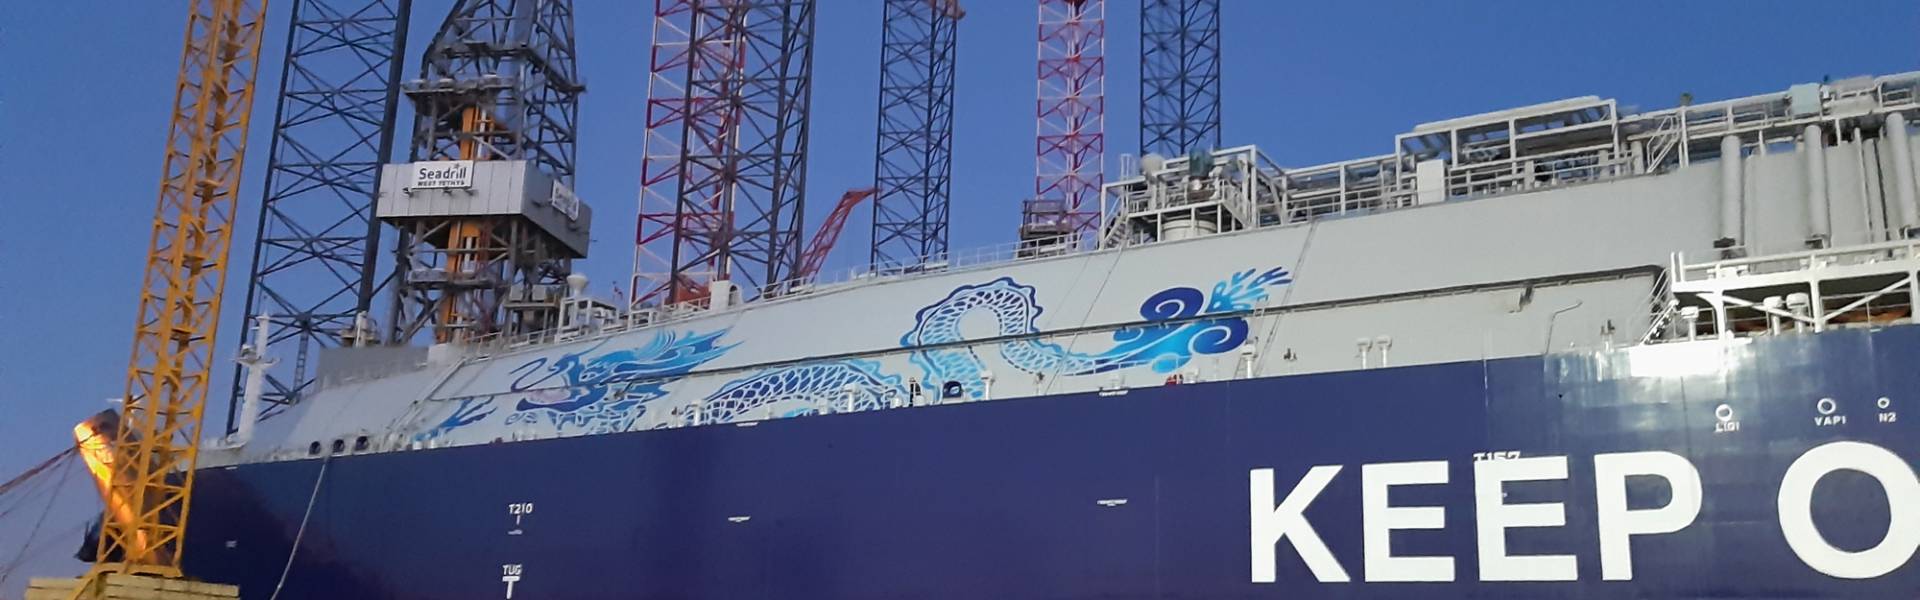 Großformatdruck in allen Farben und Schattierungen | X-Treme Creations Ein riesiger Vinylaufkleber in Form eines 60 Meter langen Drachens, der auf jeder Seite des VLEC Marlin-Schiffsbugs angebracht ist Evergas X-Treme Creations